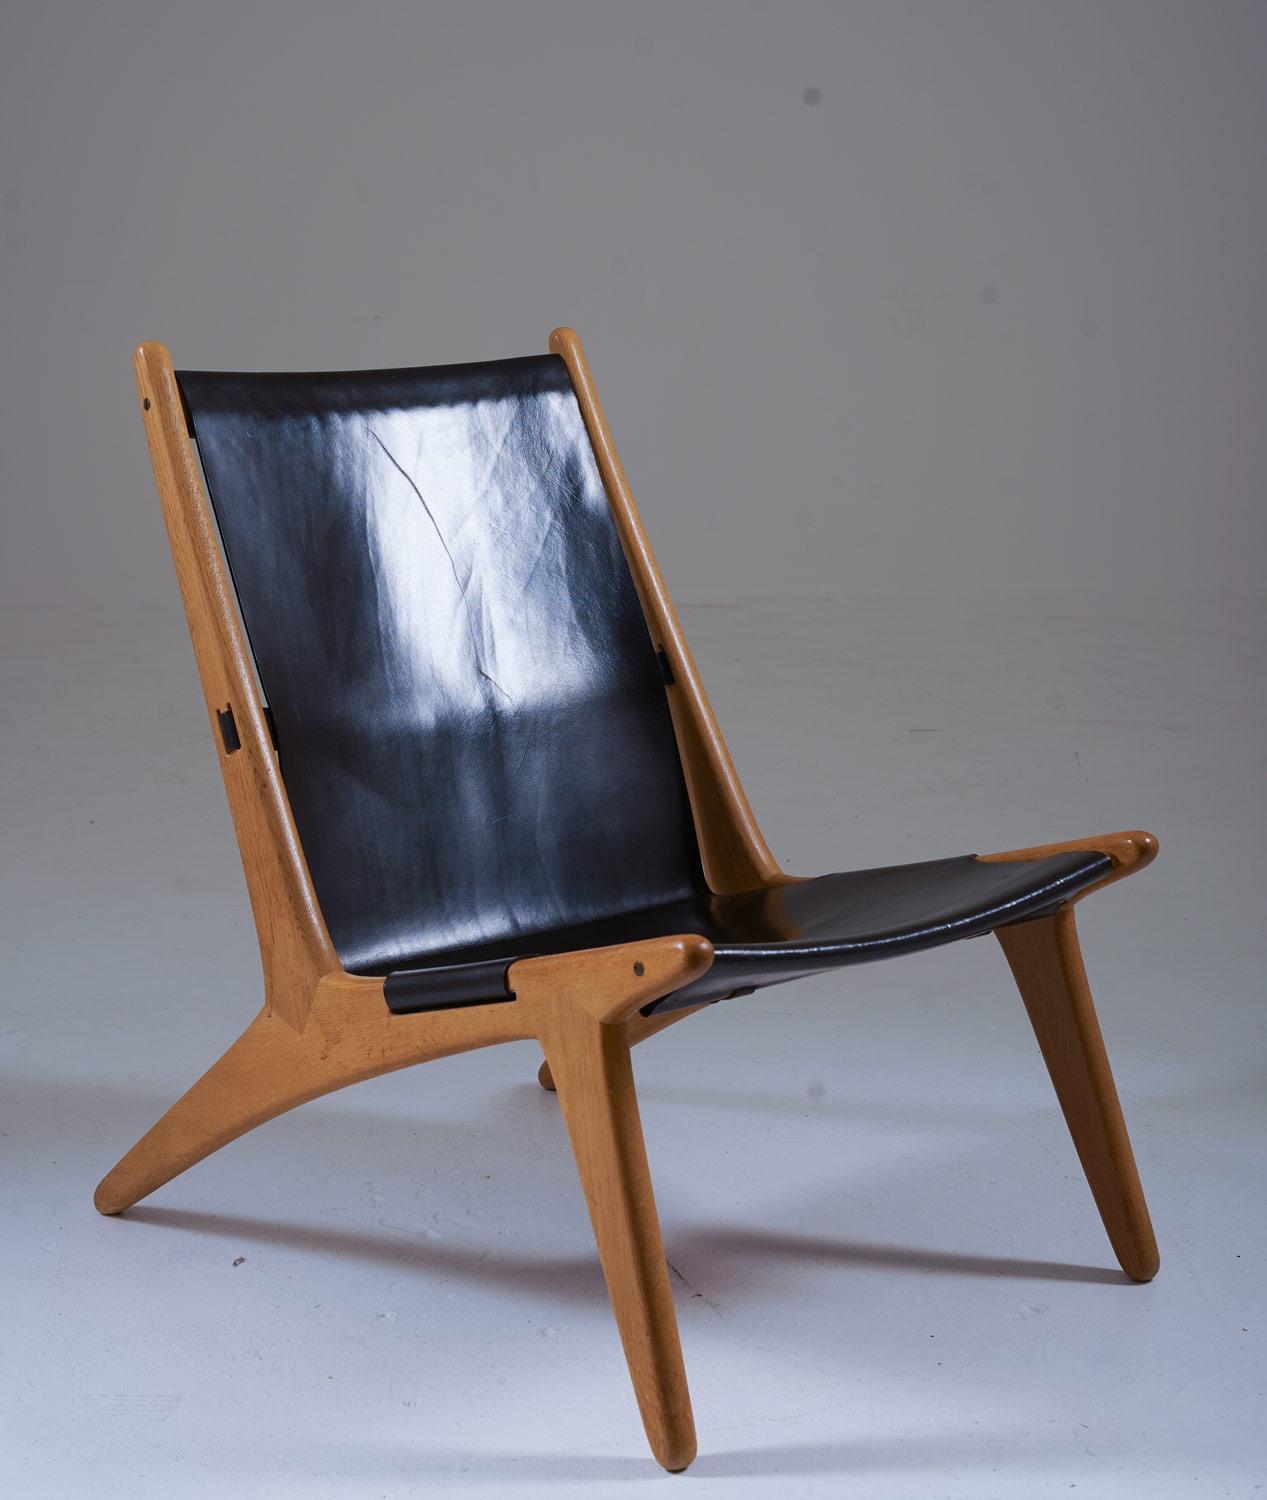 Rare chaise longue modèle 204 de Uno & Östen Kristiansson pour Luxus, Suède.
La chaise de chasse a été conçue par Design/One et Östen Kristiansson en 1954 et appartient au sommet de l'histoire du design suédois. La chaise est composée d'un cadre en